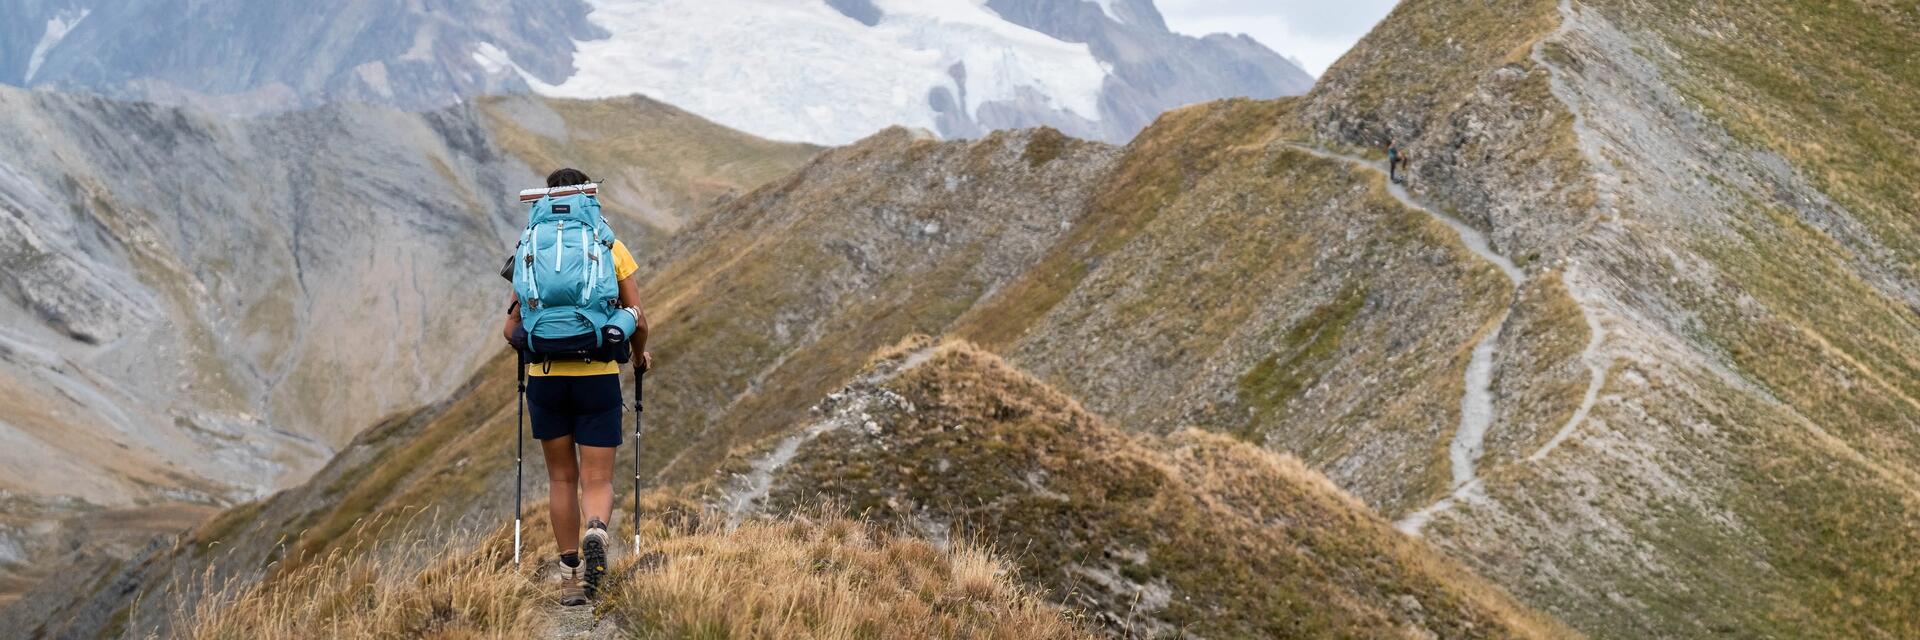 Kobieta idąca z ekwipunkiem górskim zapakowanym w niosący na plecach plecak turystyczny